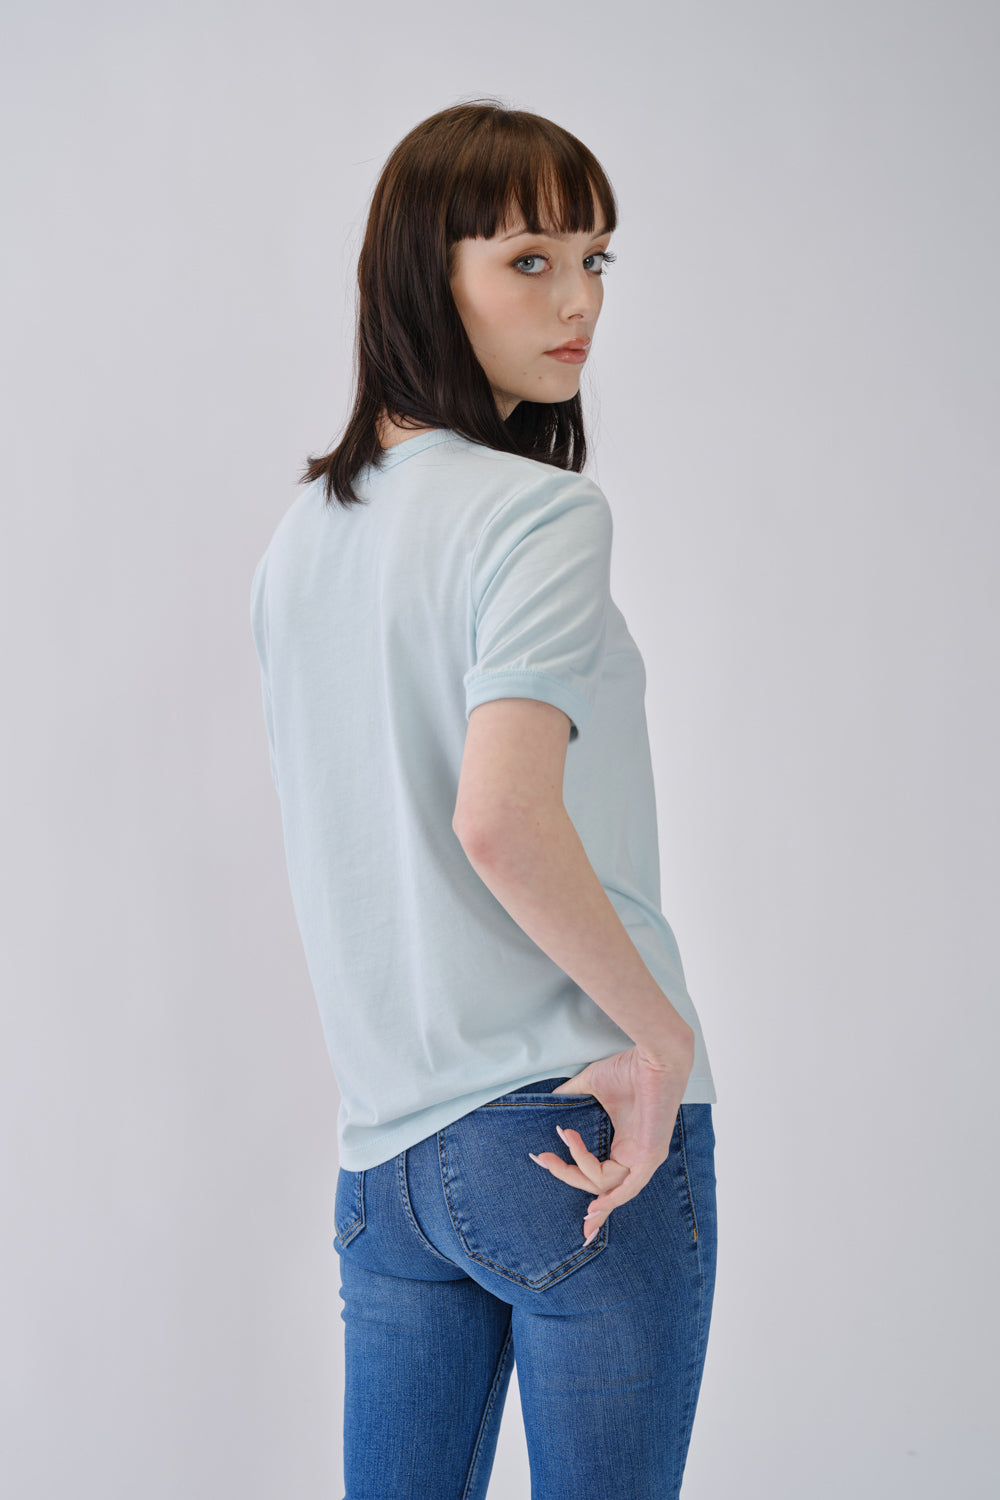 160/410 - T-shirt Clássica Mulher